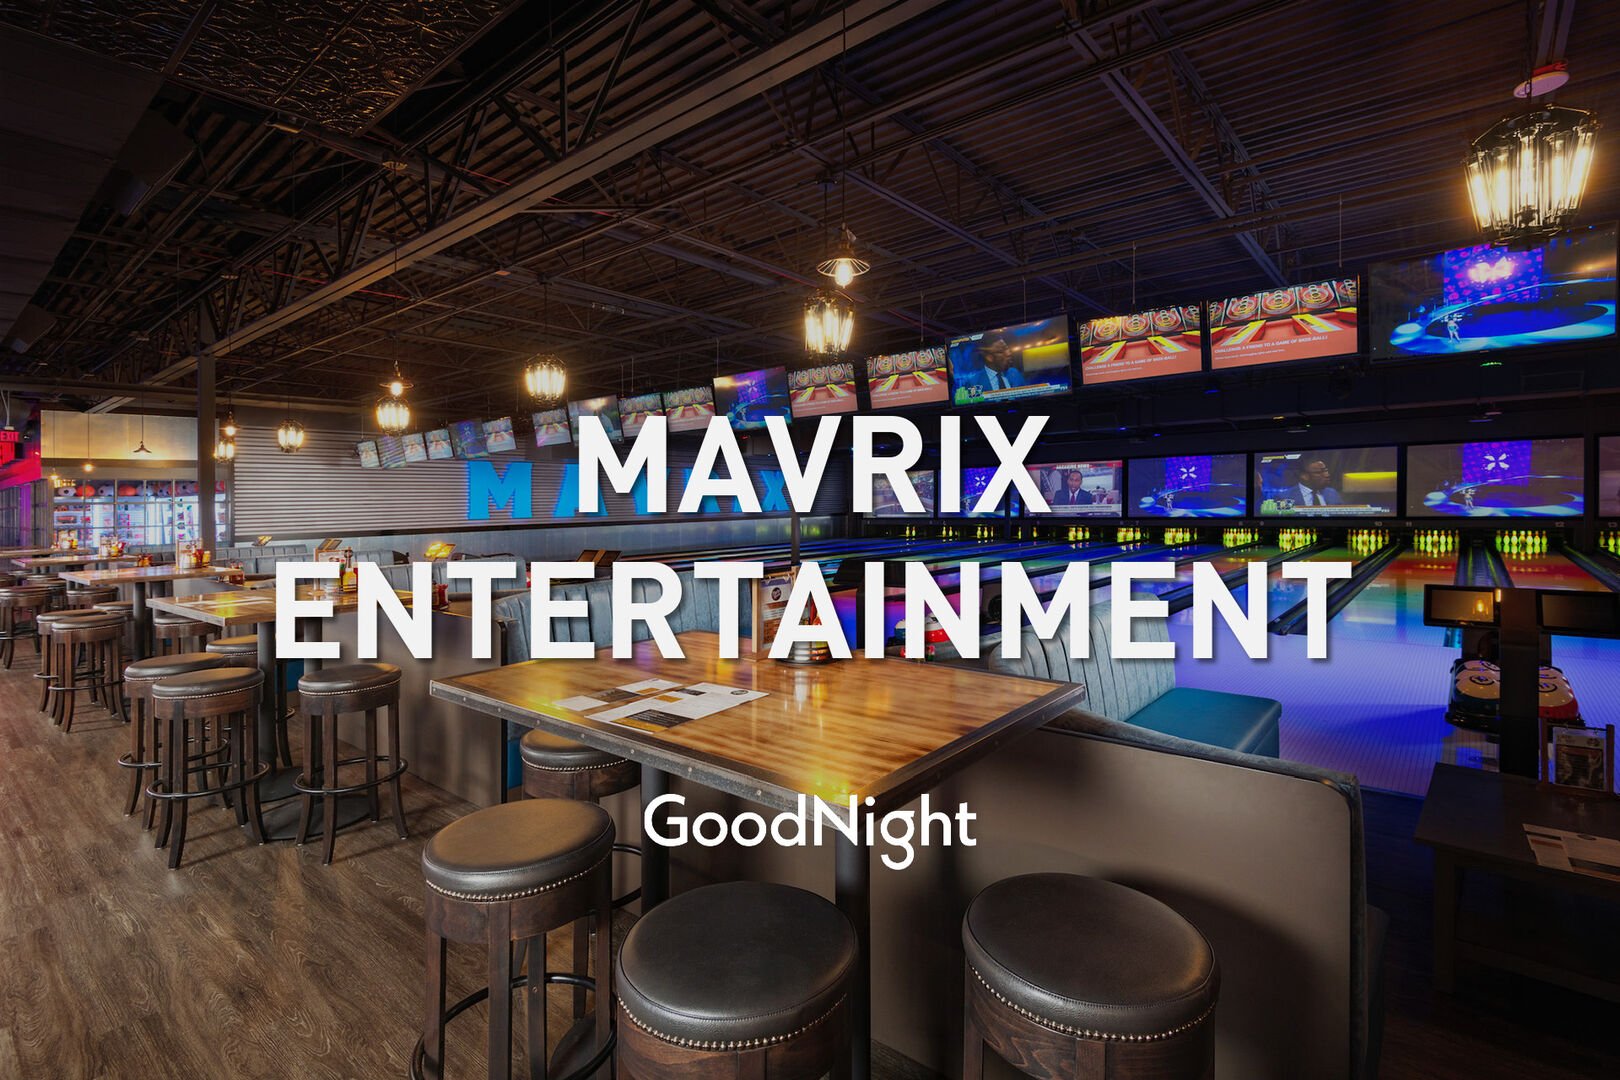 15 min to Mavrix Entertainment